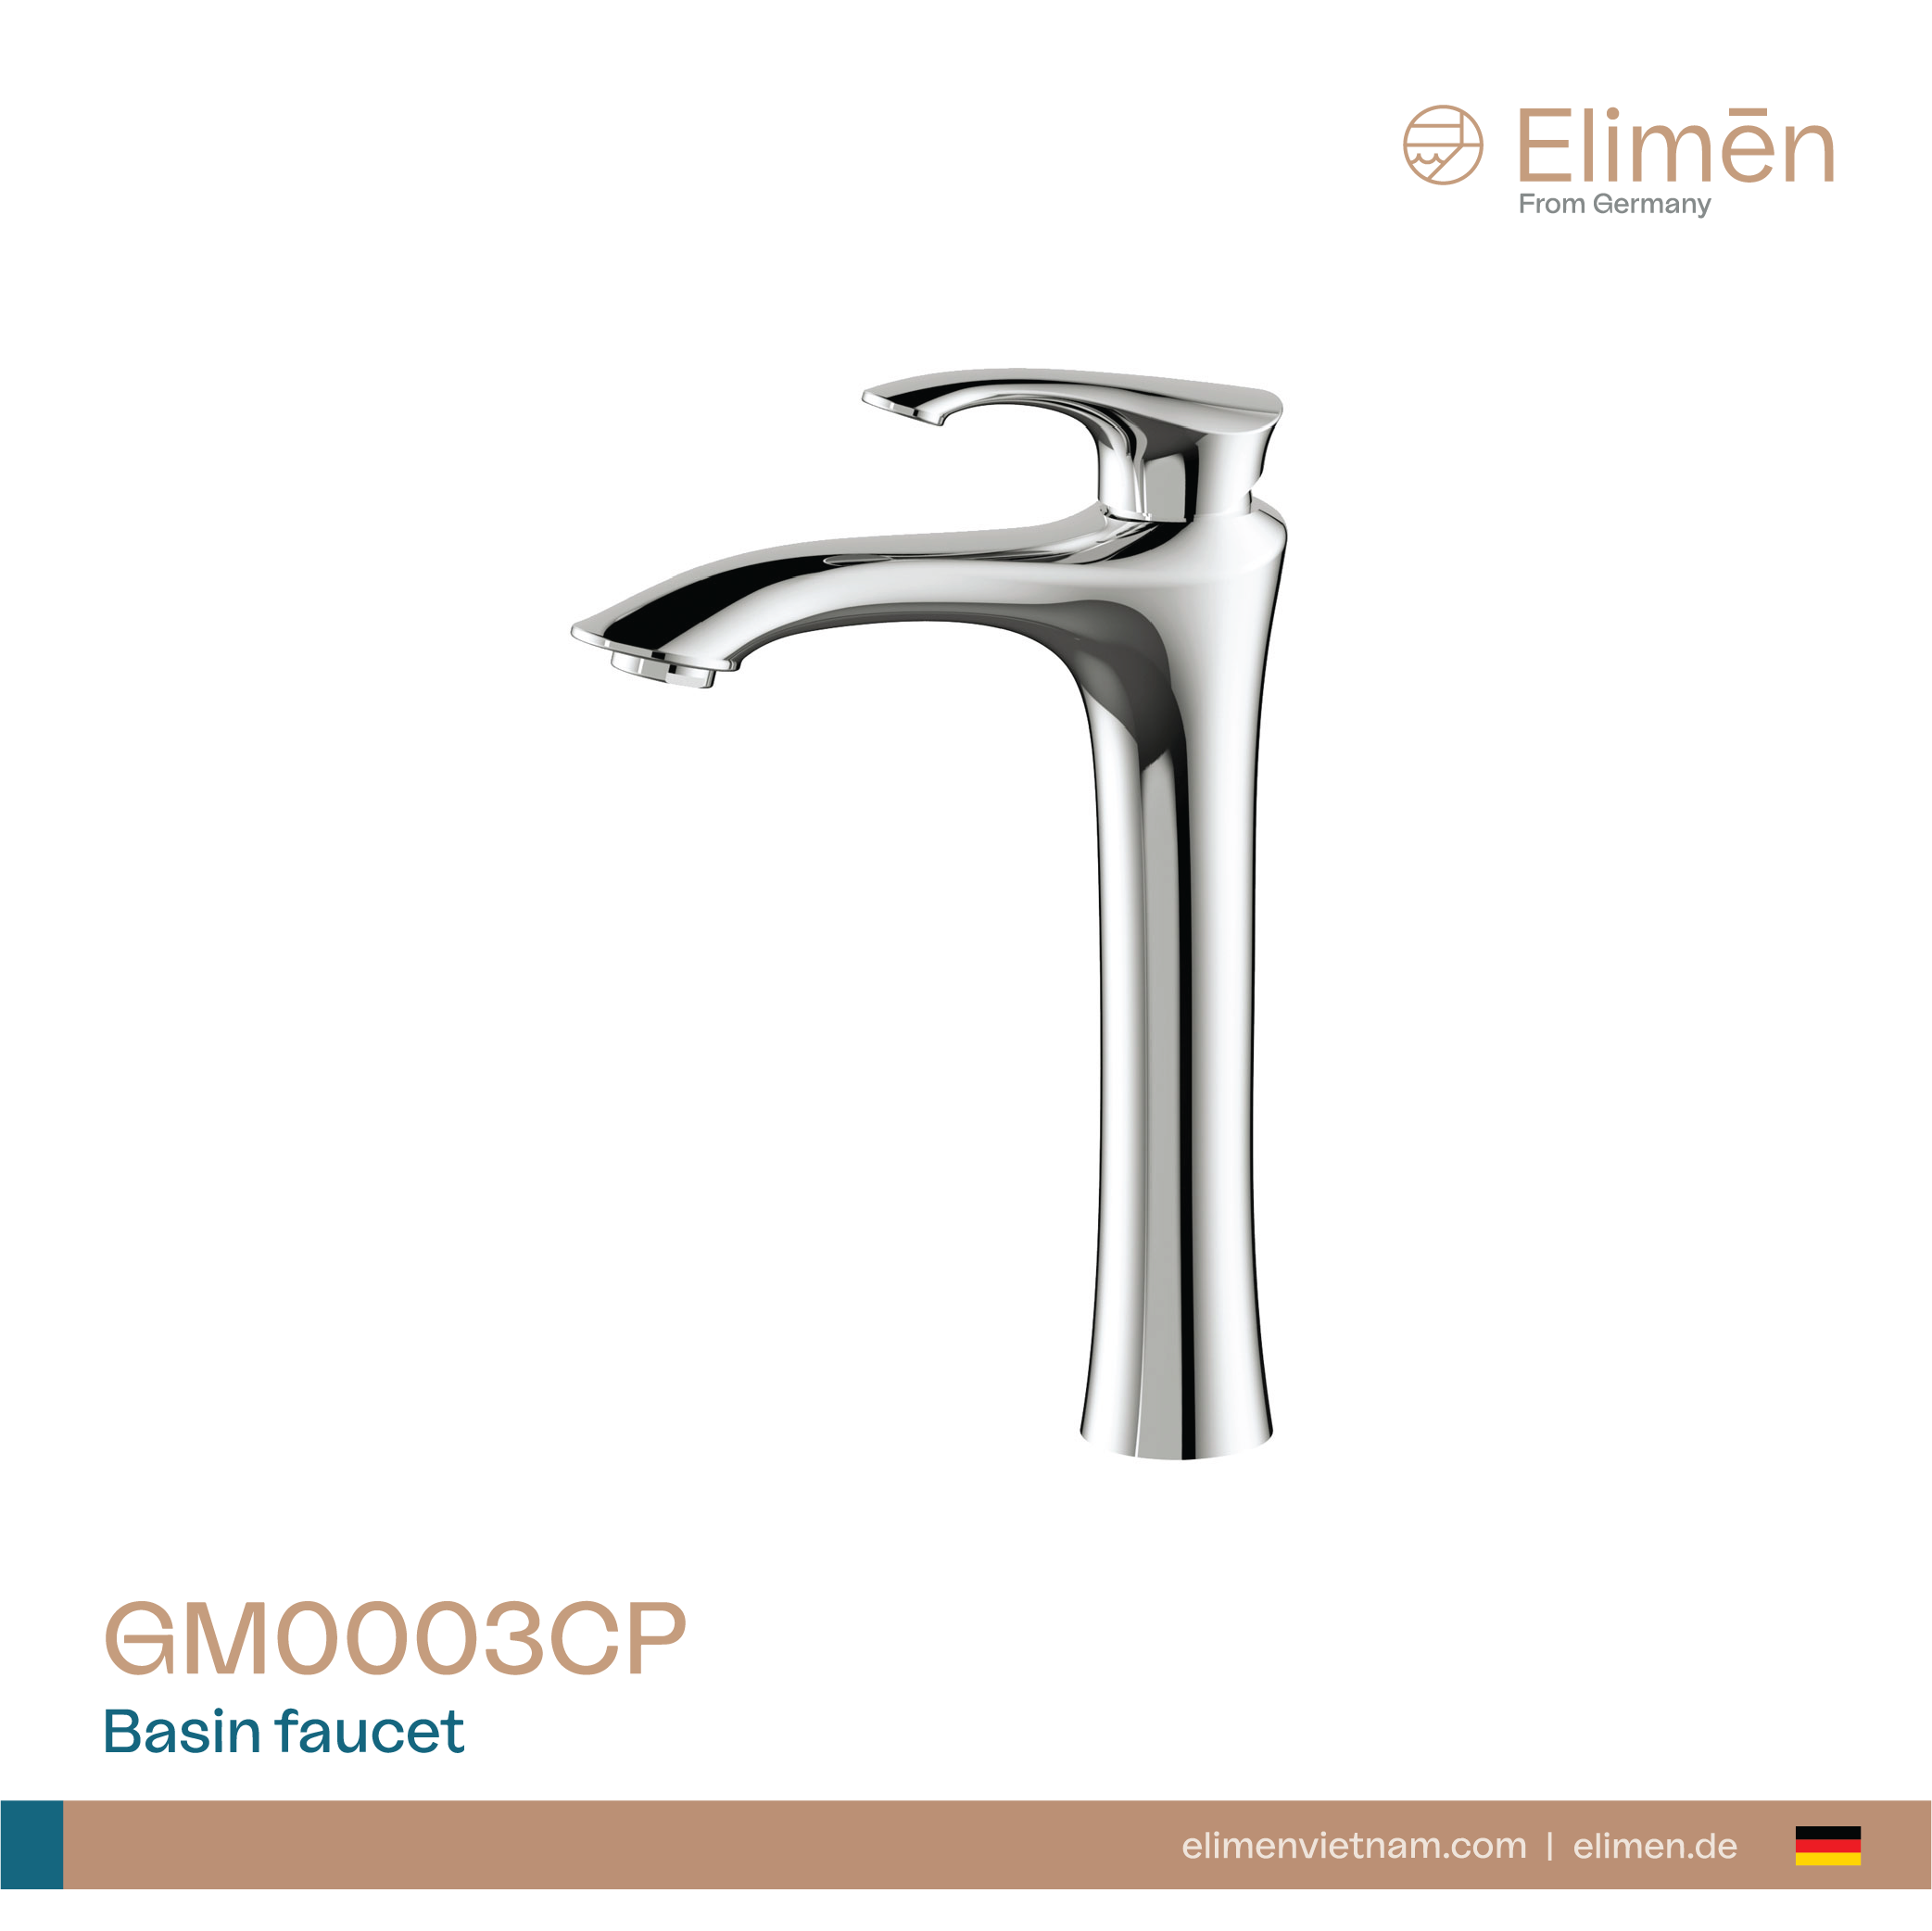 Elimen basin faucet - Code GM0003CP